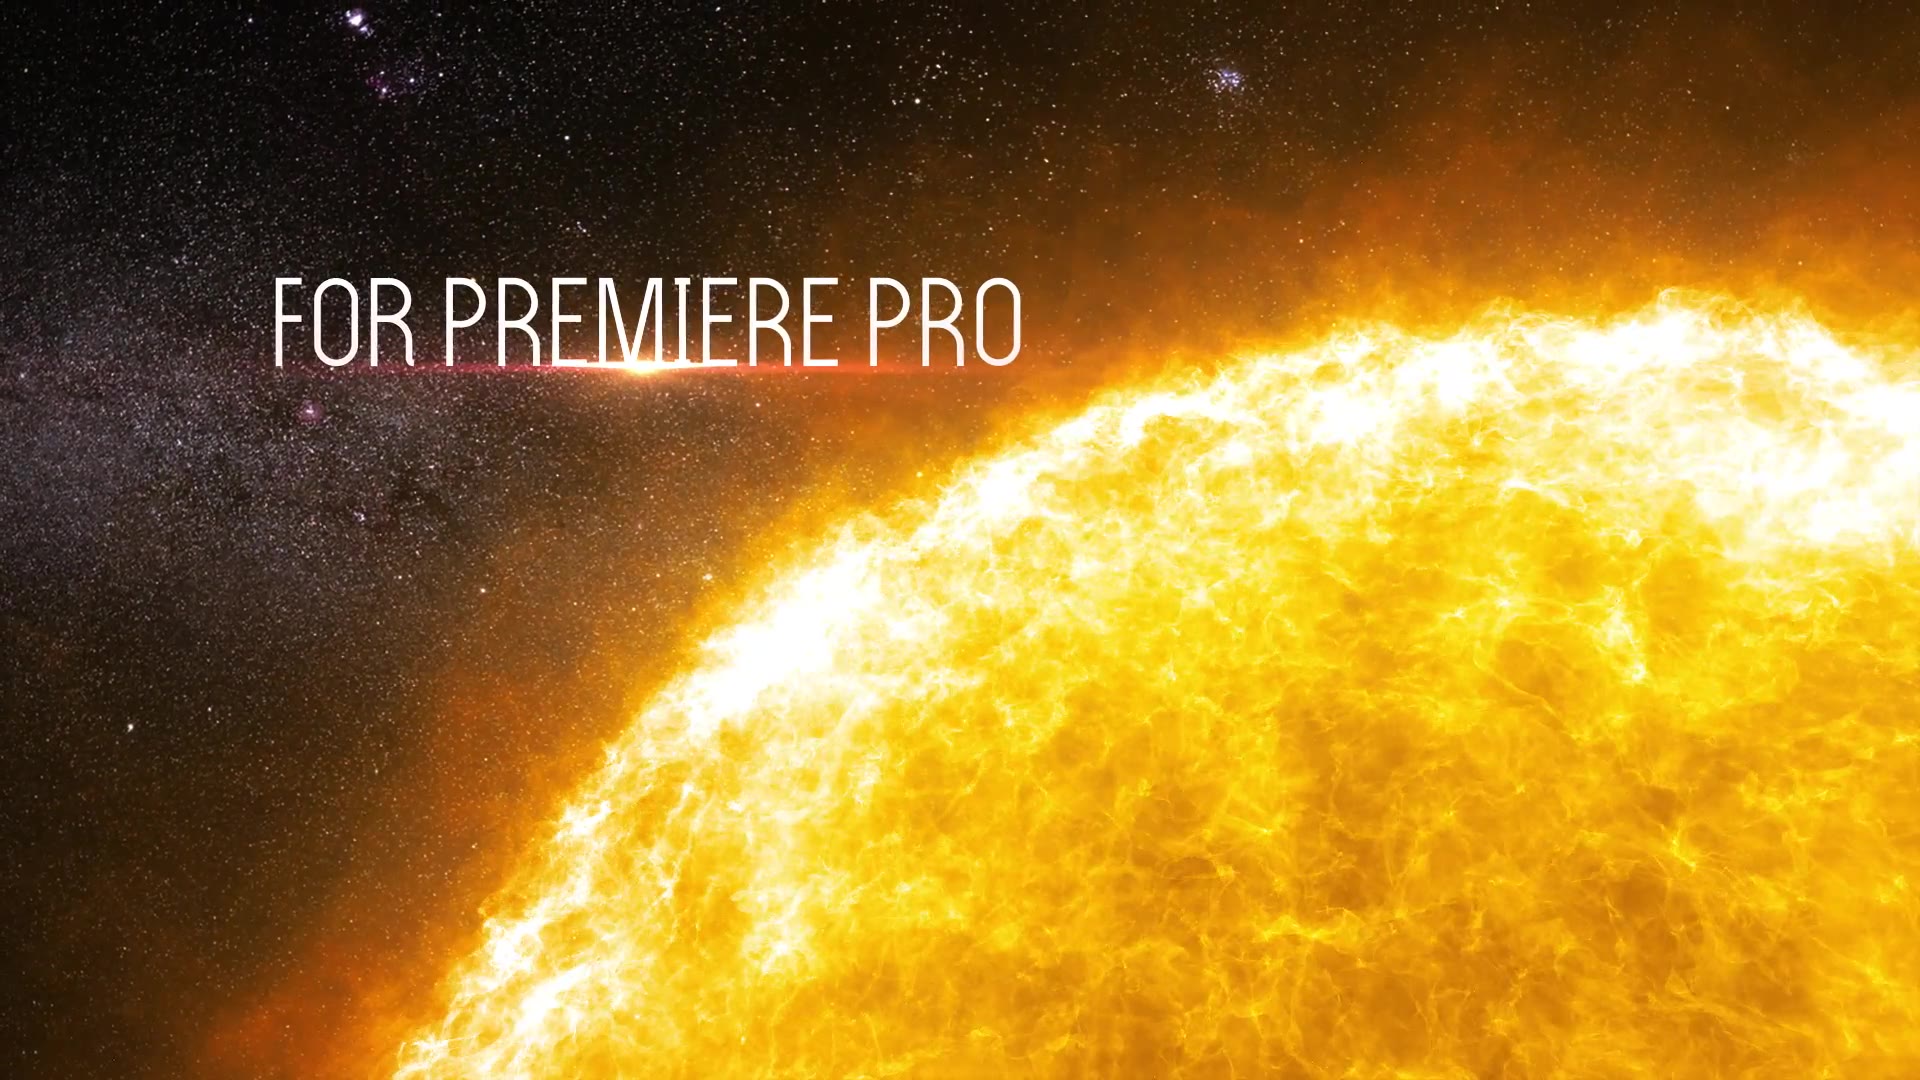 The Solar Cinematic Trailer Premiere Pro Videohive 24577336 Premiere Pro Image 3